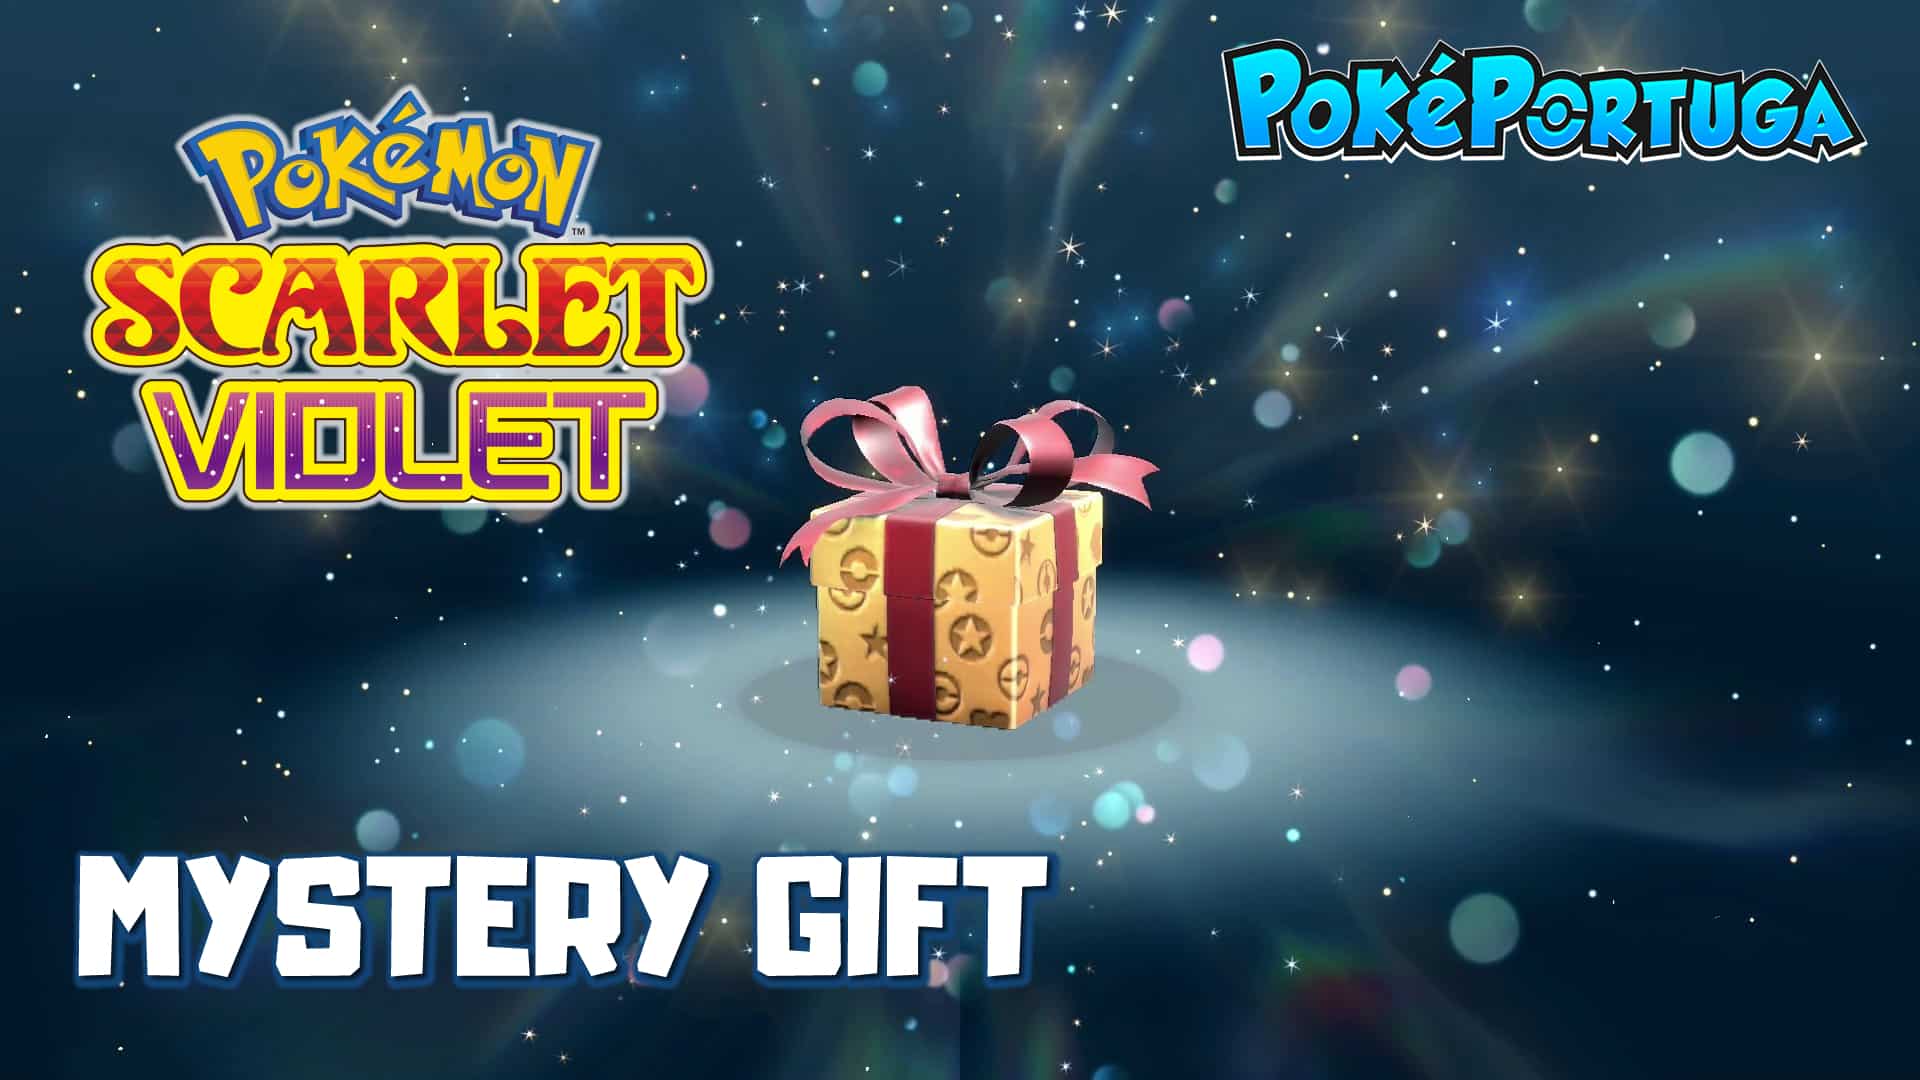 Pokémon Scarlet & Violet Mystery Gift e Códigos PokéPortuga